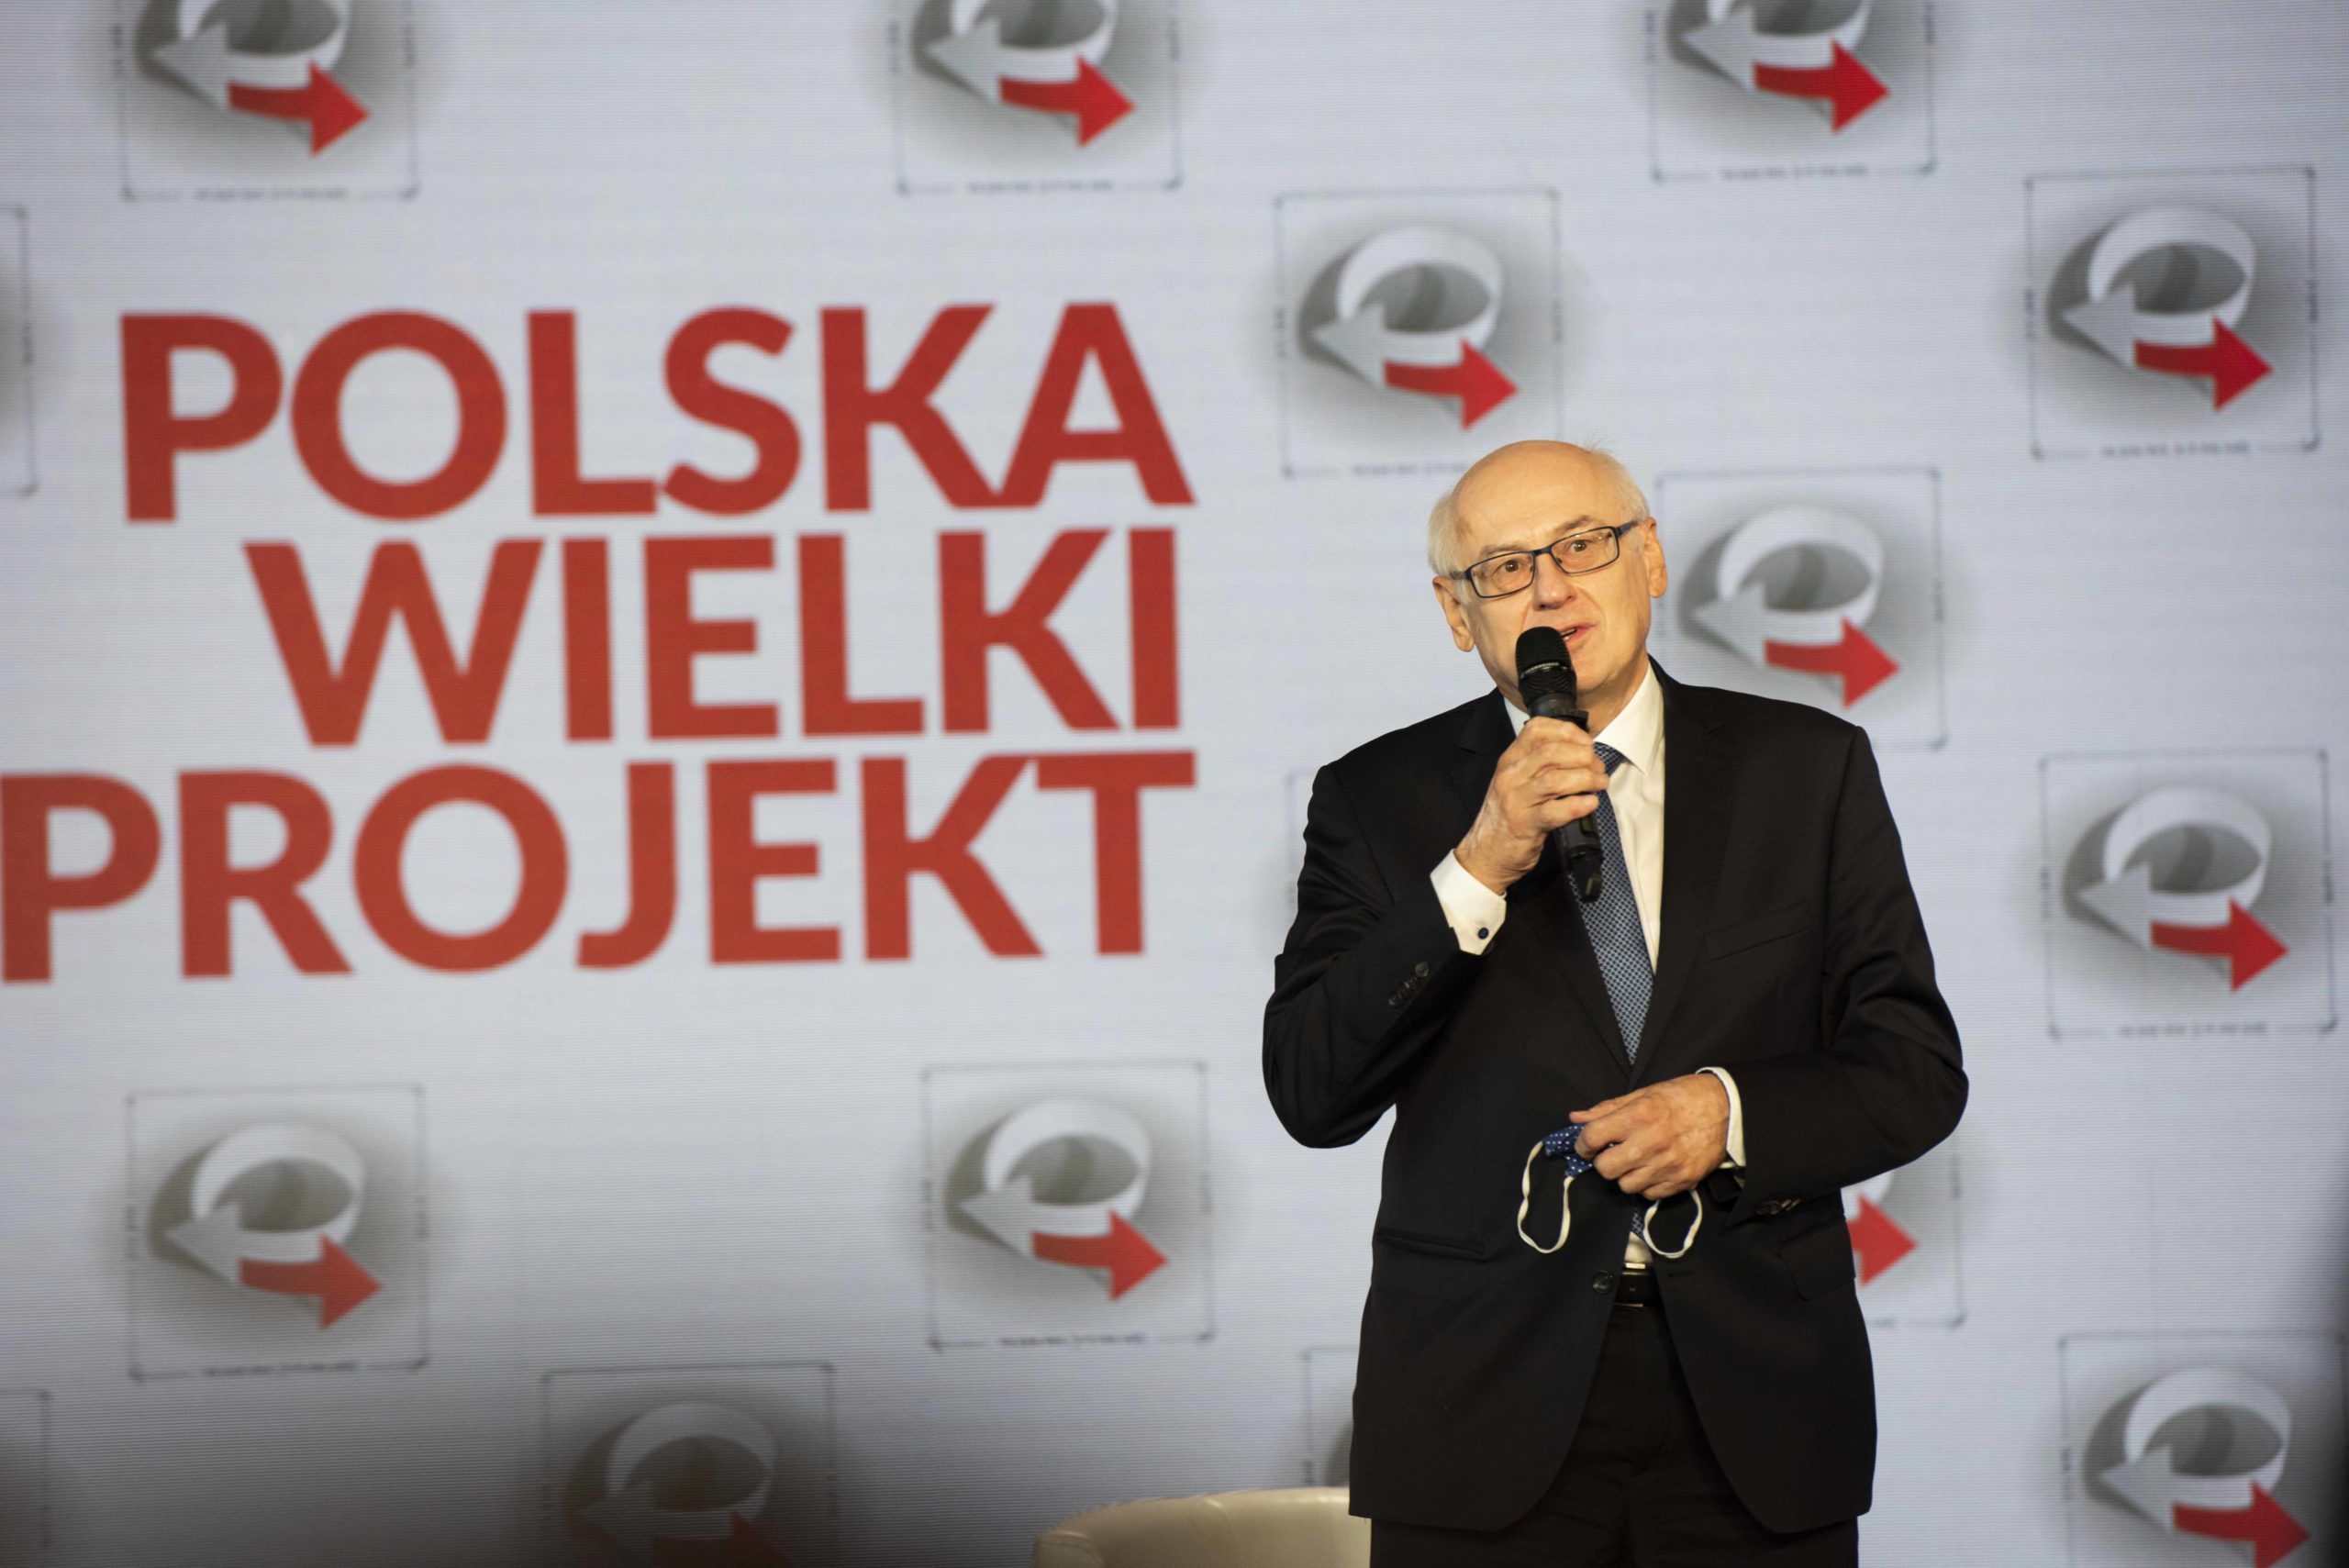 Kongres Polska Wielki Projekt; Zdzisław Krasnodębski